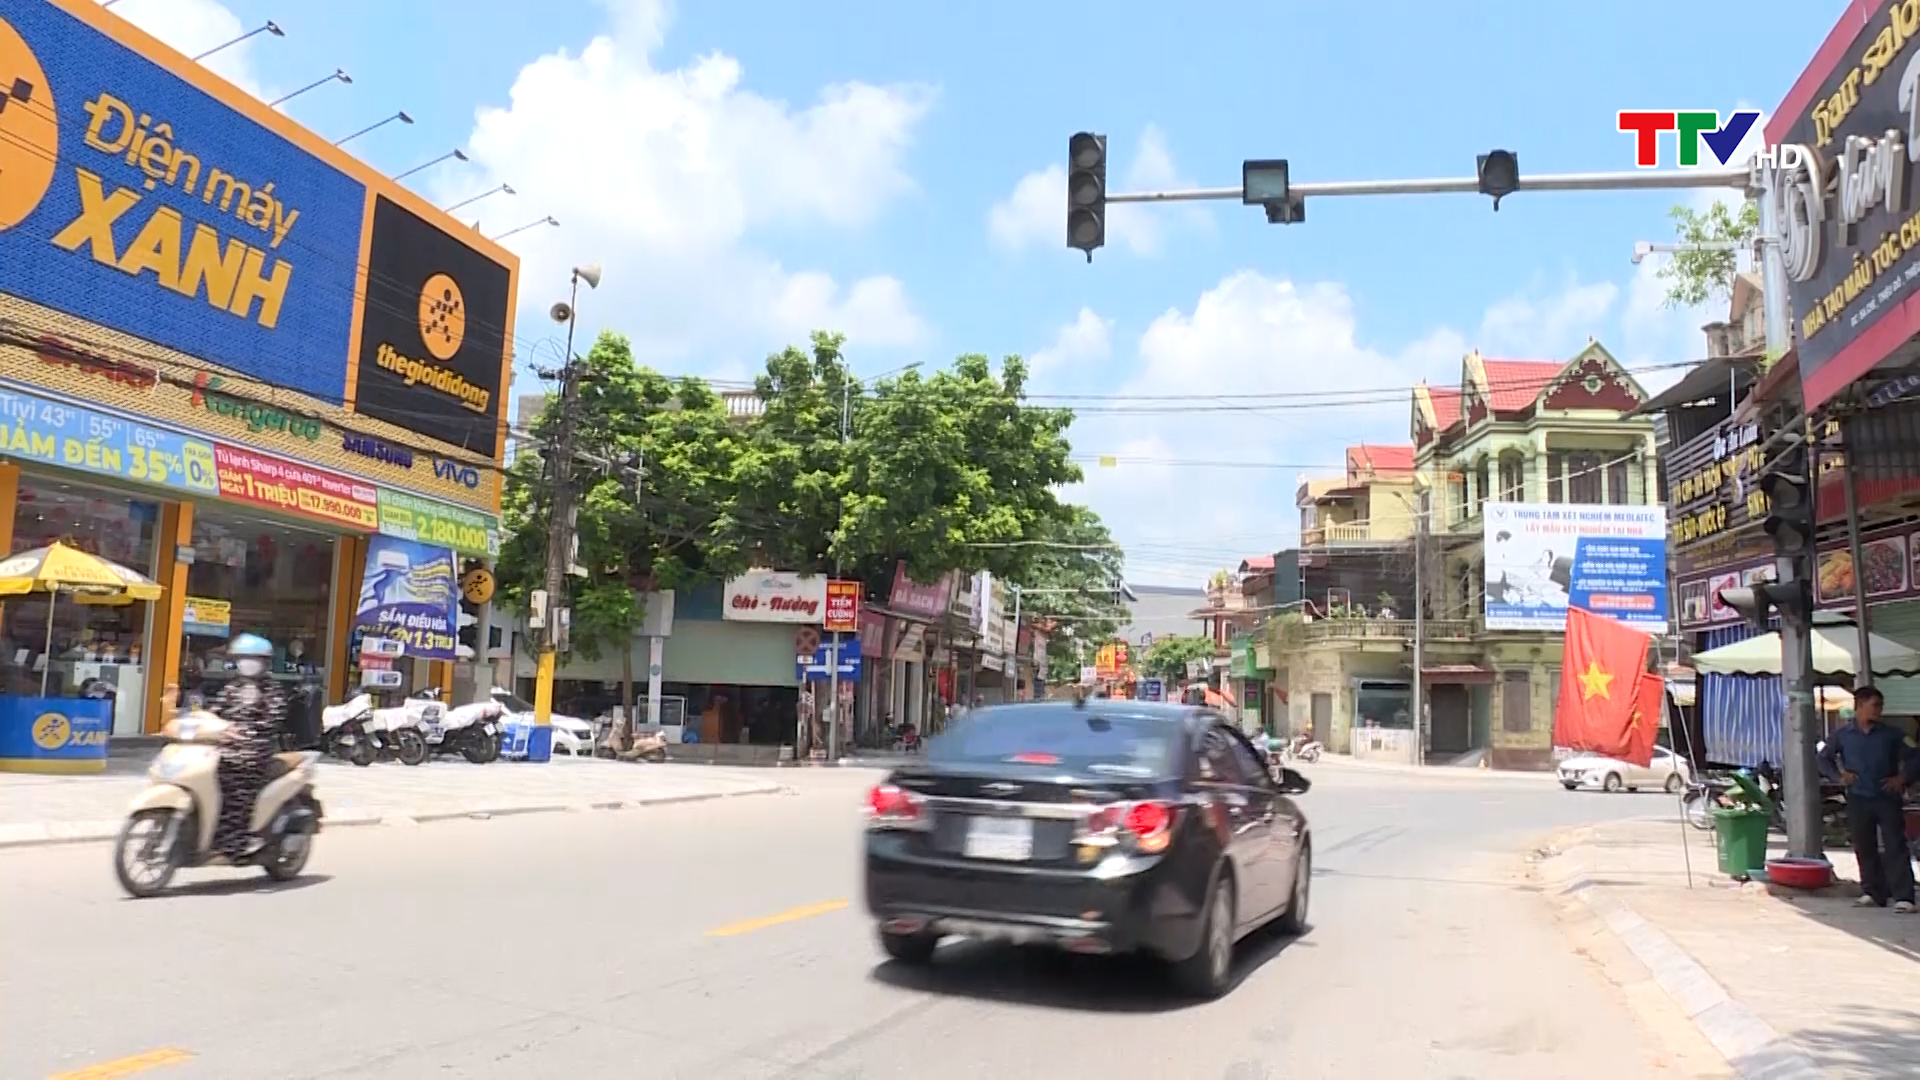 Cần có biện pháp xóa bỏ điểm đen tai nạn giao thông tại  ngã Ba Chè, huyện Thiệu Hóa - Ảnh 2.